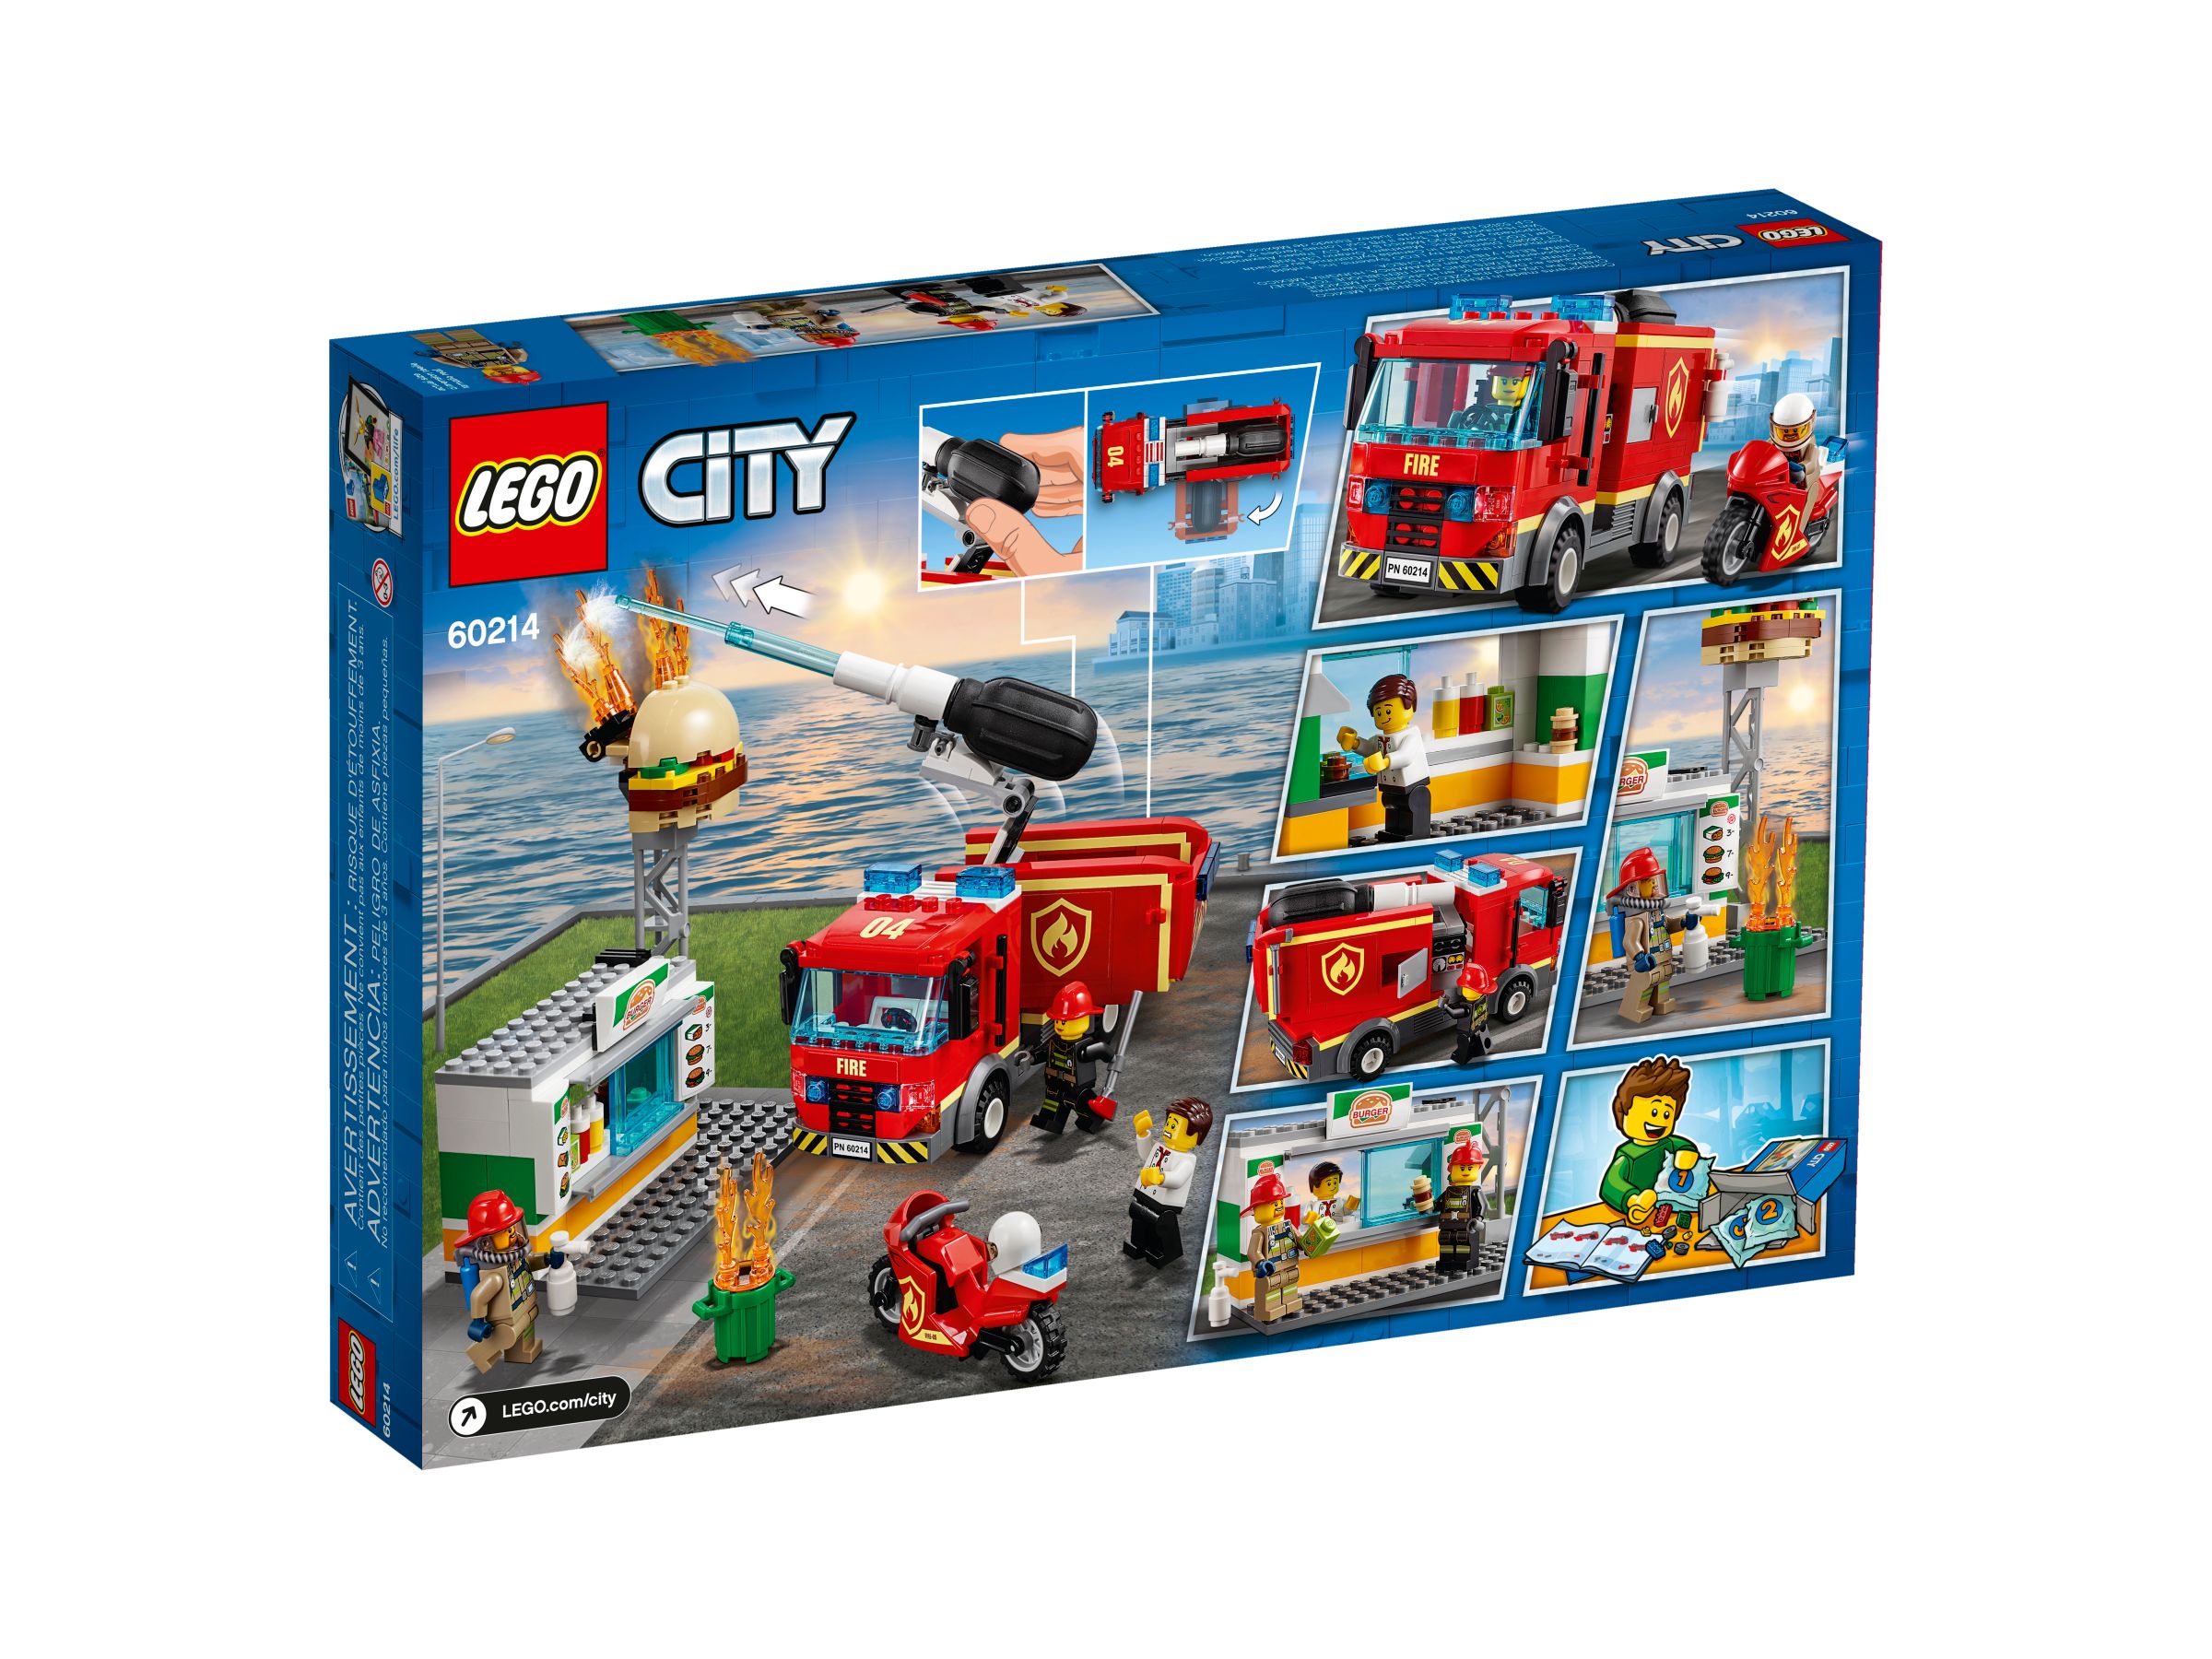 LEGO City 60214 Feuerwehreinsatz im Burger-Restaurant LEGO_60214_alt4.jpg